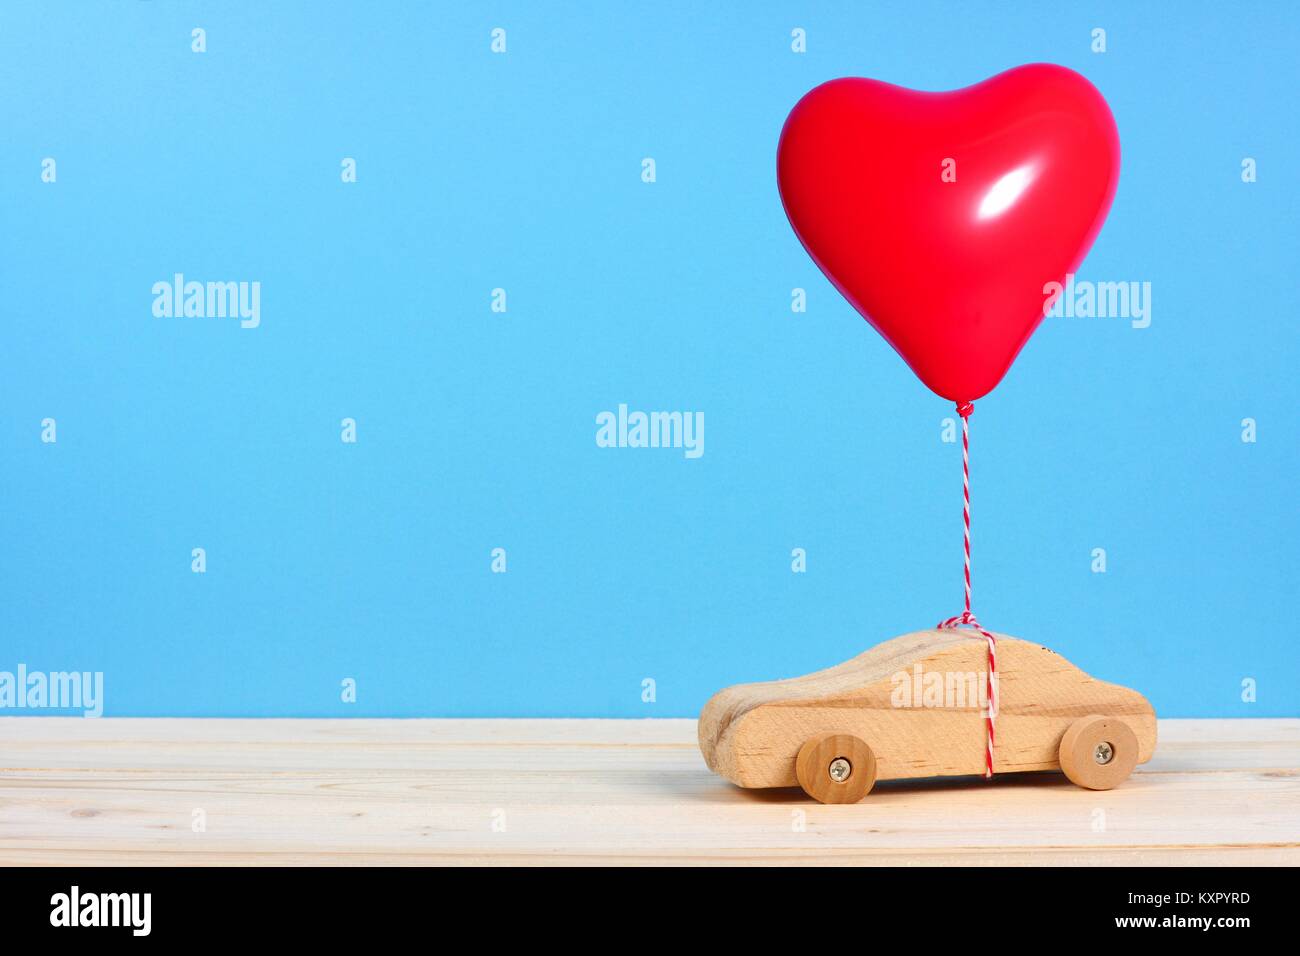 Holzspielzeug Auto mit einem roten Herz Ballon vor einem blauen Hintergrund. Valentines Tag oder Liebe Konzept. Stockfoto